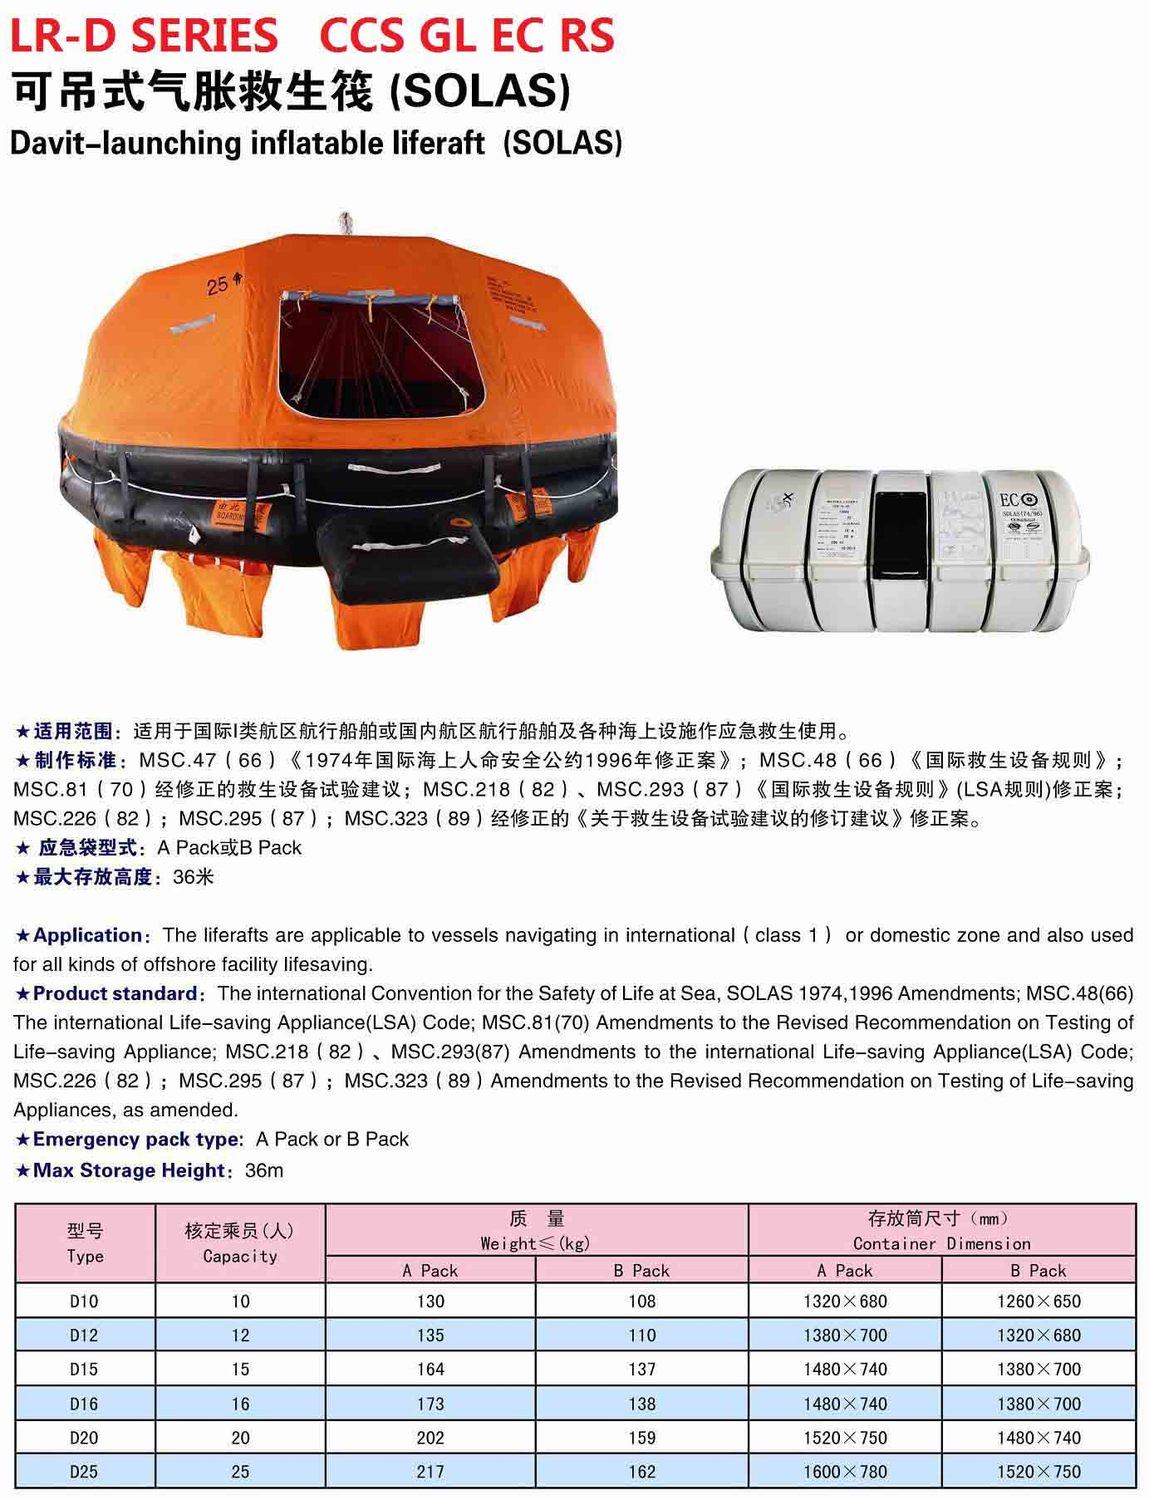 LR-D Series Davit-launched Inflatable Liferaft(SOLAS)